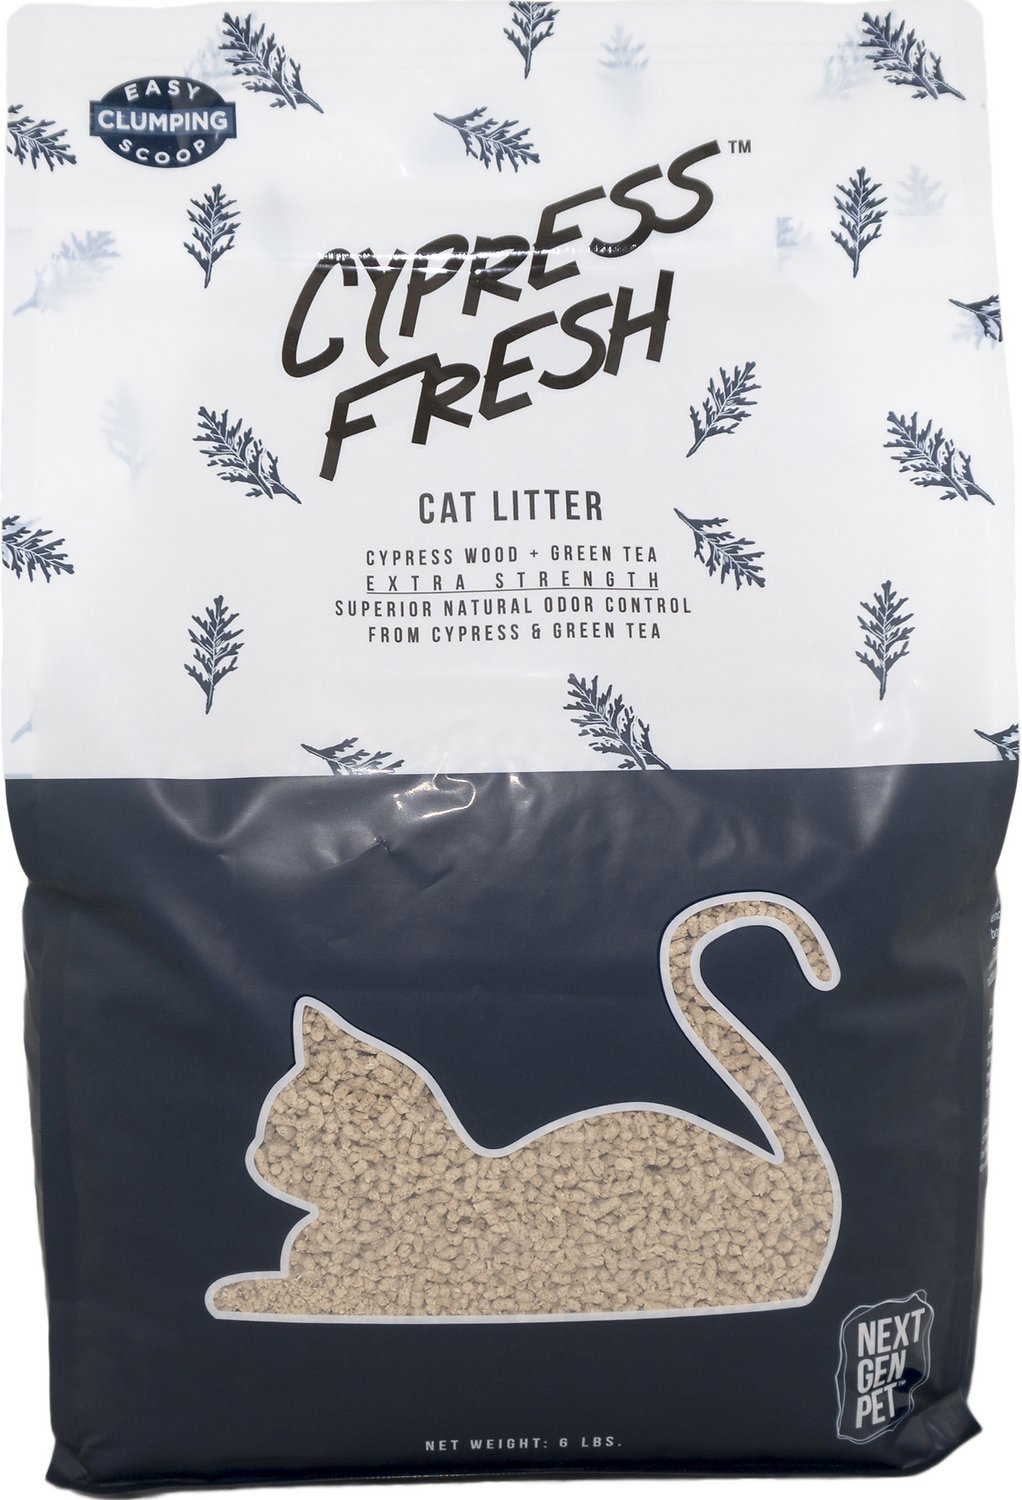 Next Gen Cypress Fresh Cat Litter #6